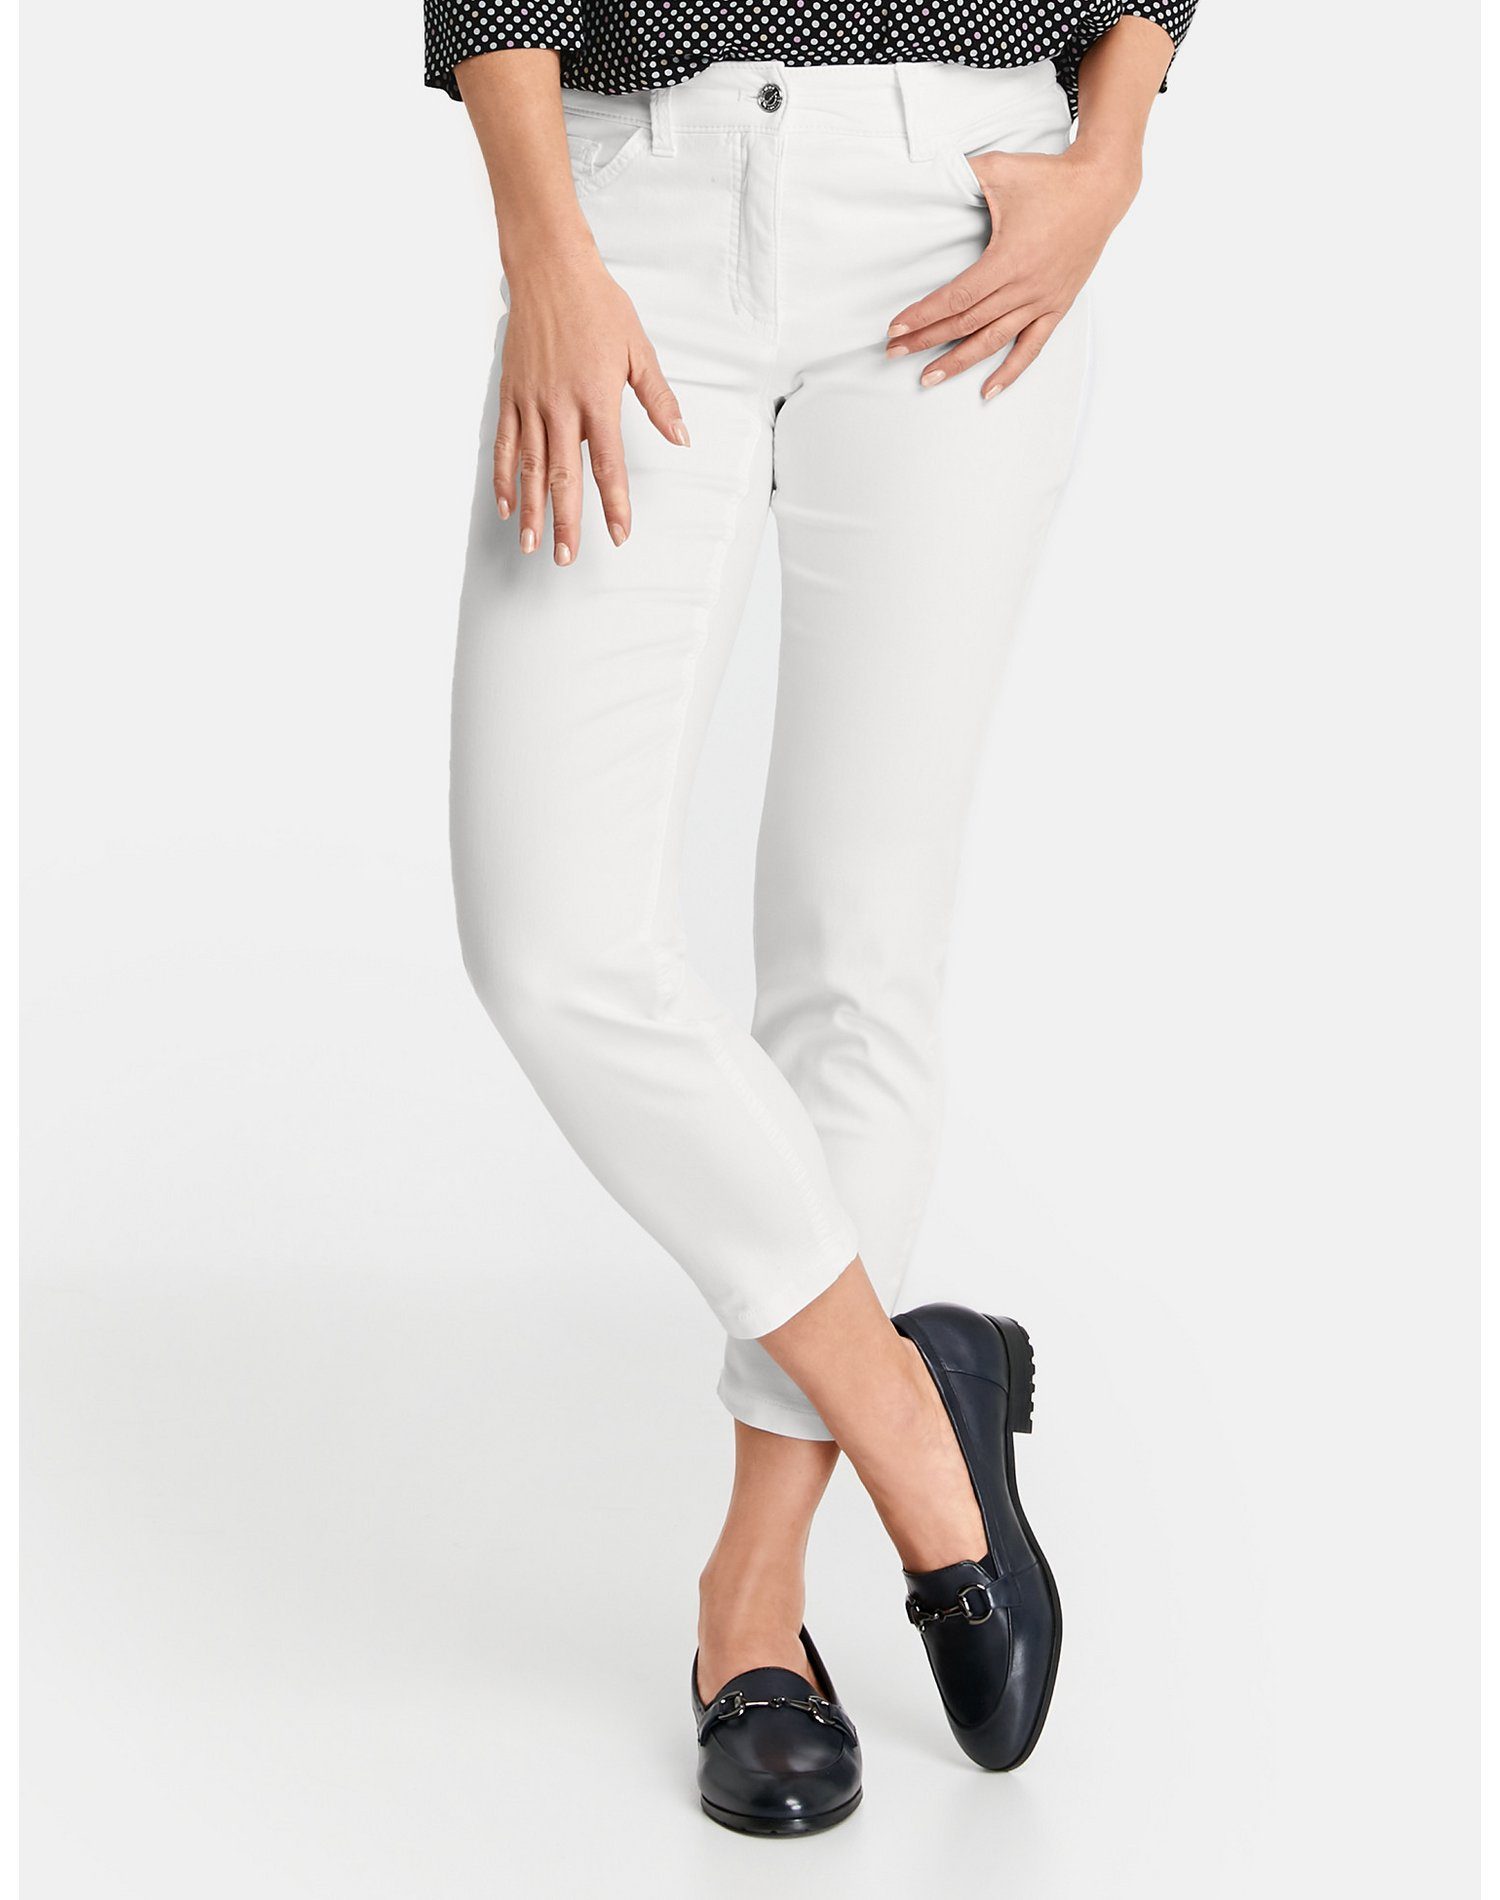 Von offiziellen Händlern bezogen GERRY WEBER 7/8-Jeans 7/8 5-Pocket Best4me weiß/weiß Hose